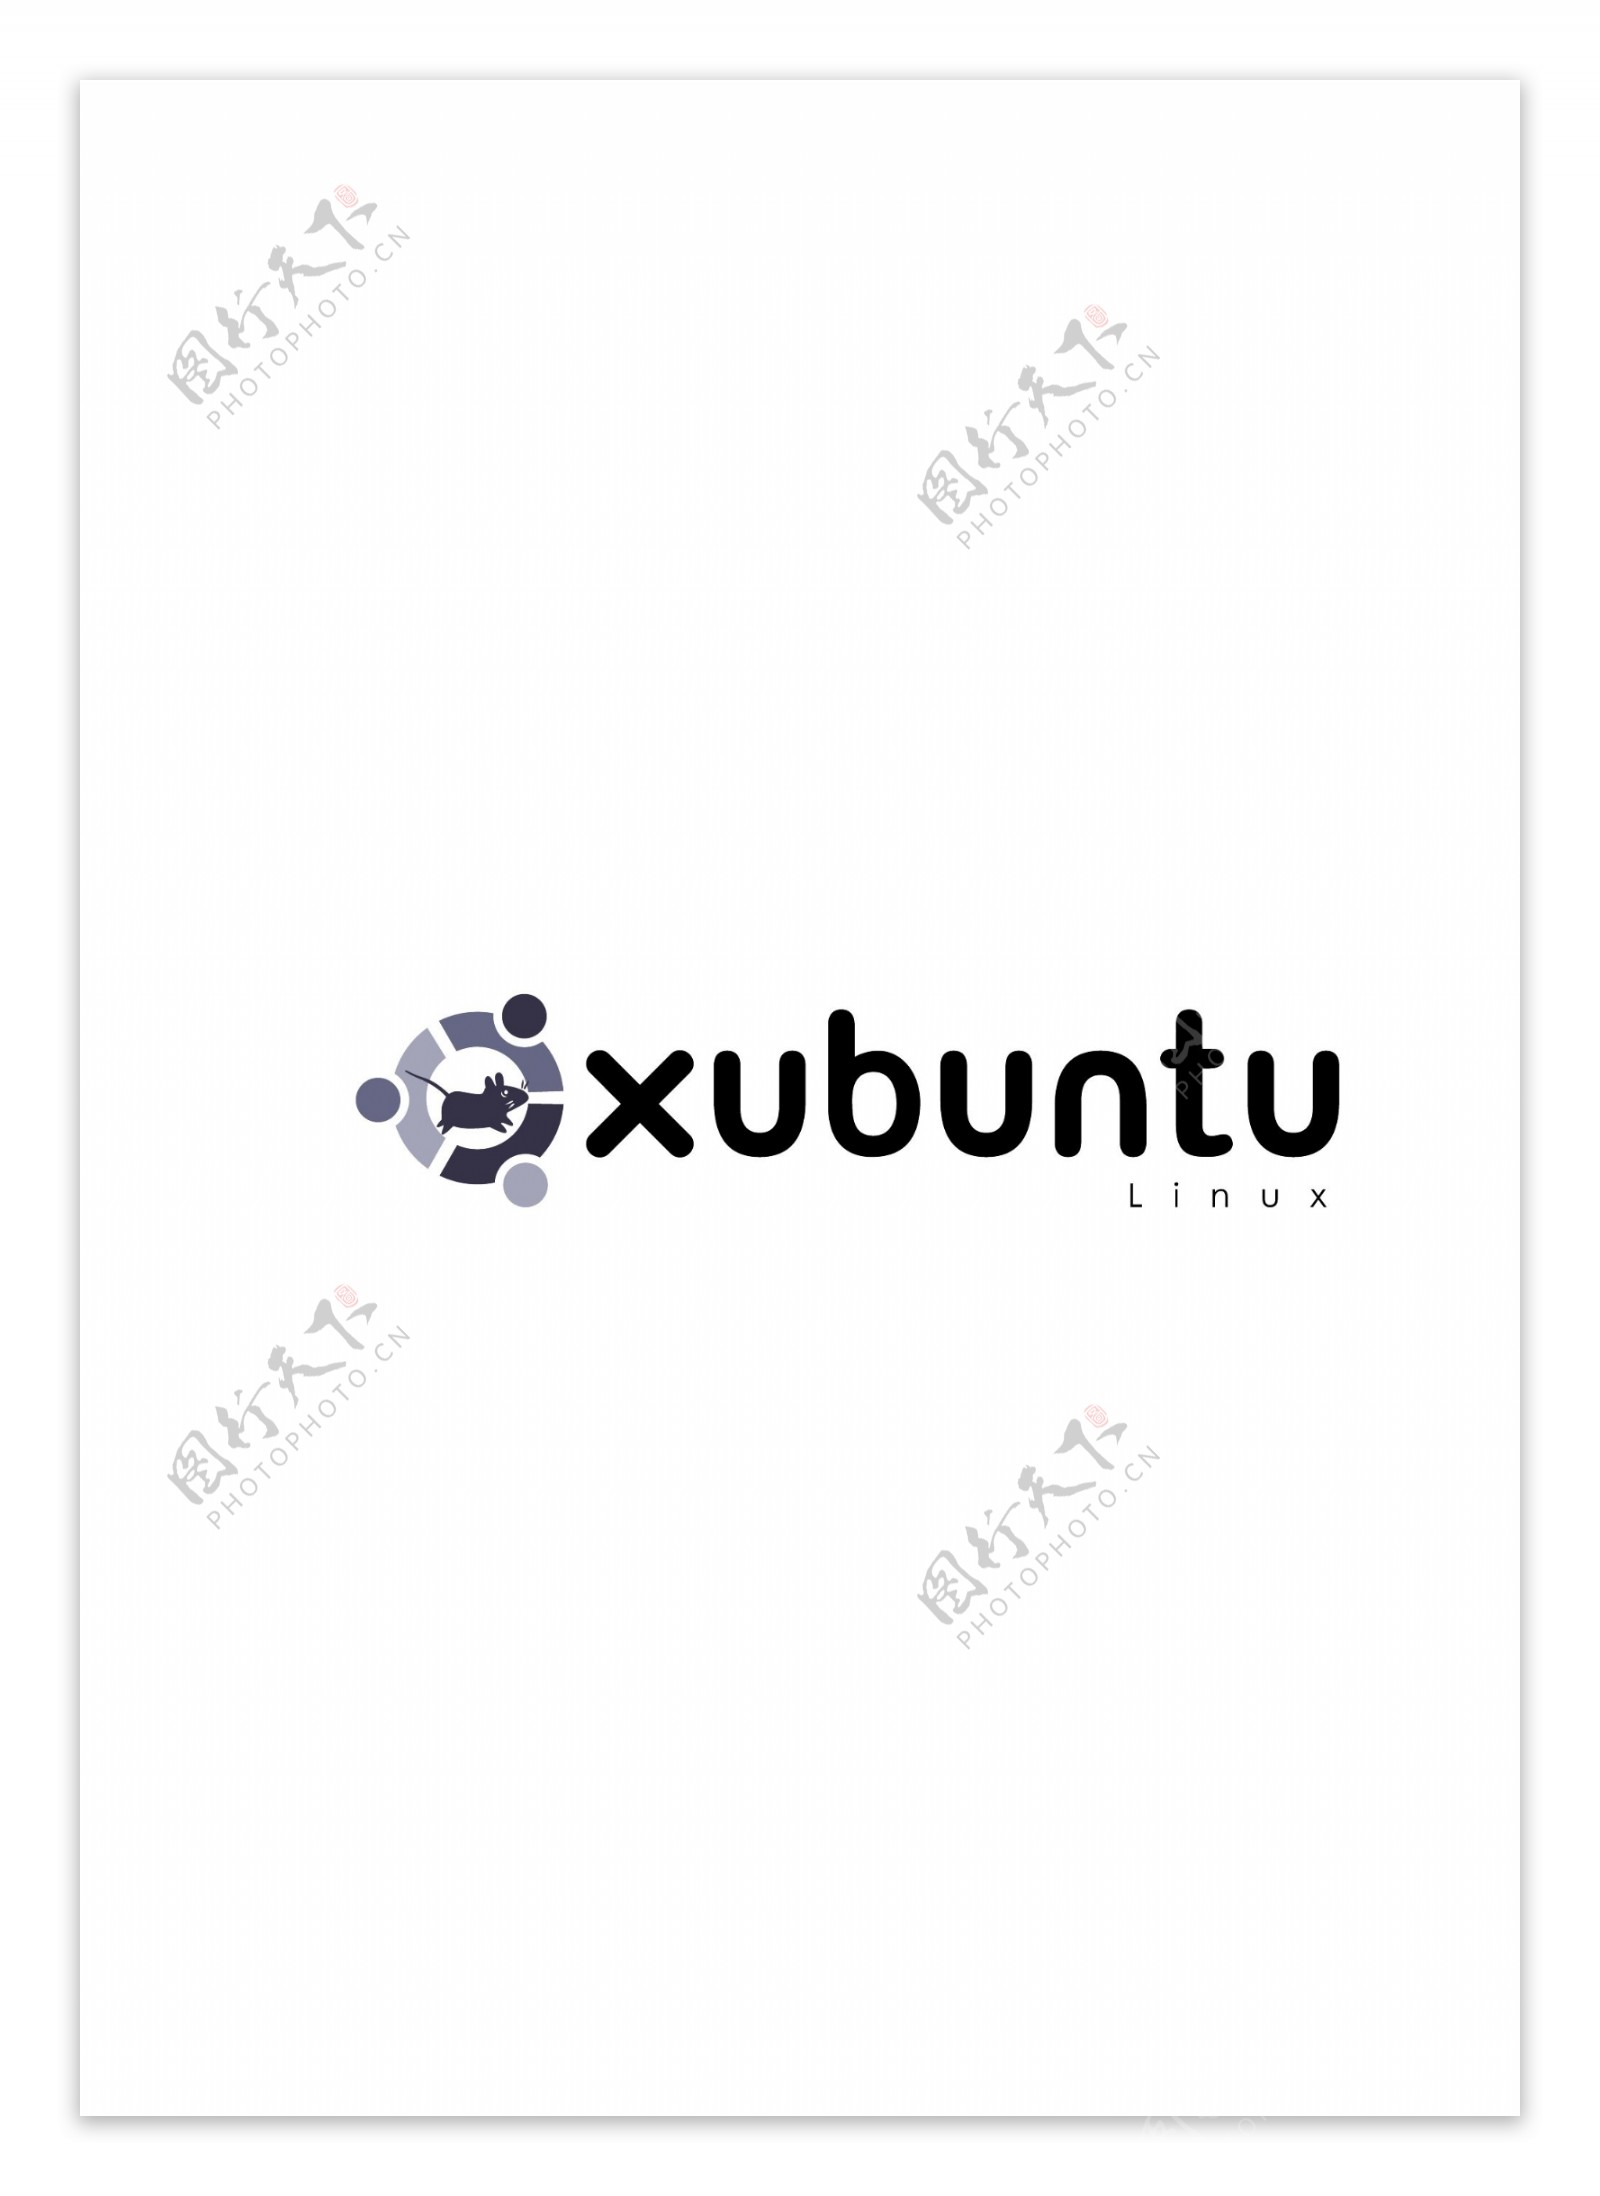 XubuntuLinuxlogo设计欣赏XubuntuLinux电脑周边标志下载标志设计欣赏